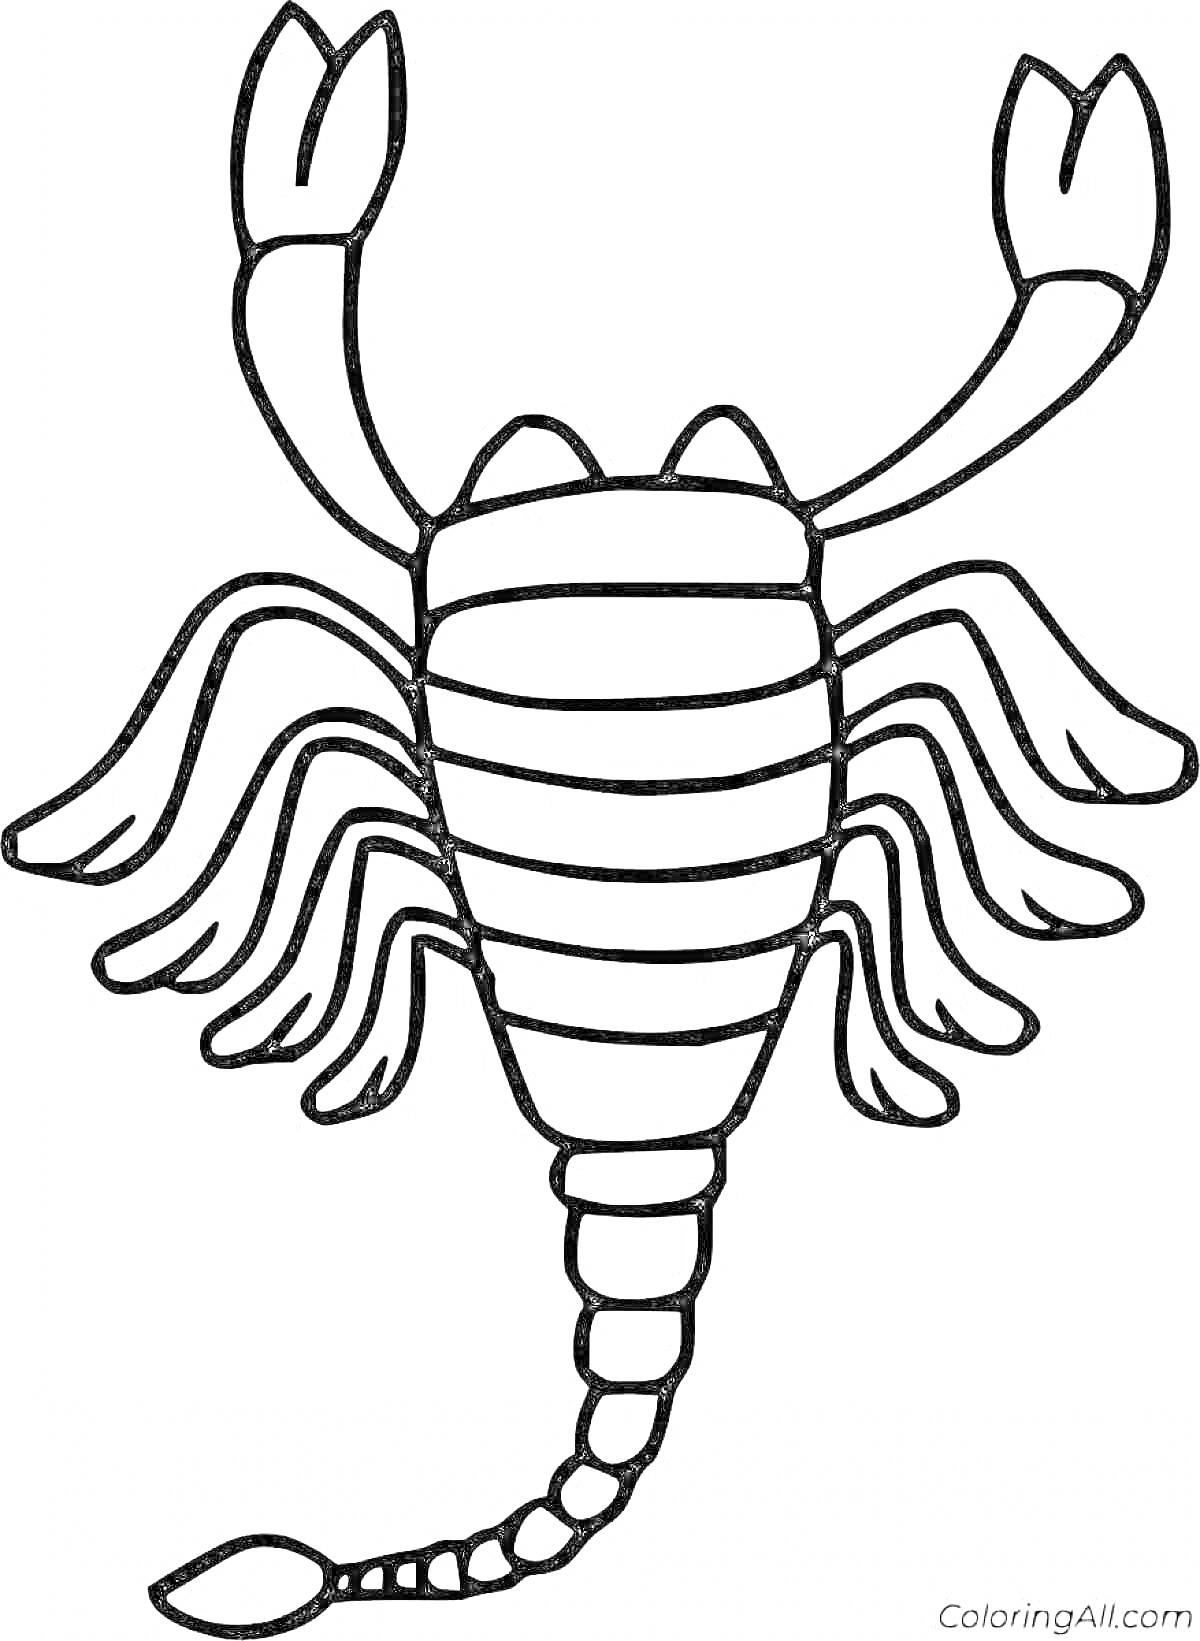 Скорпион с поднятыми клешнями и детализированным хвостом